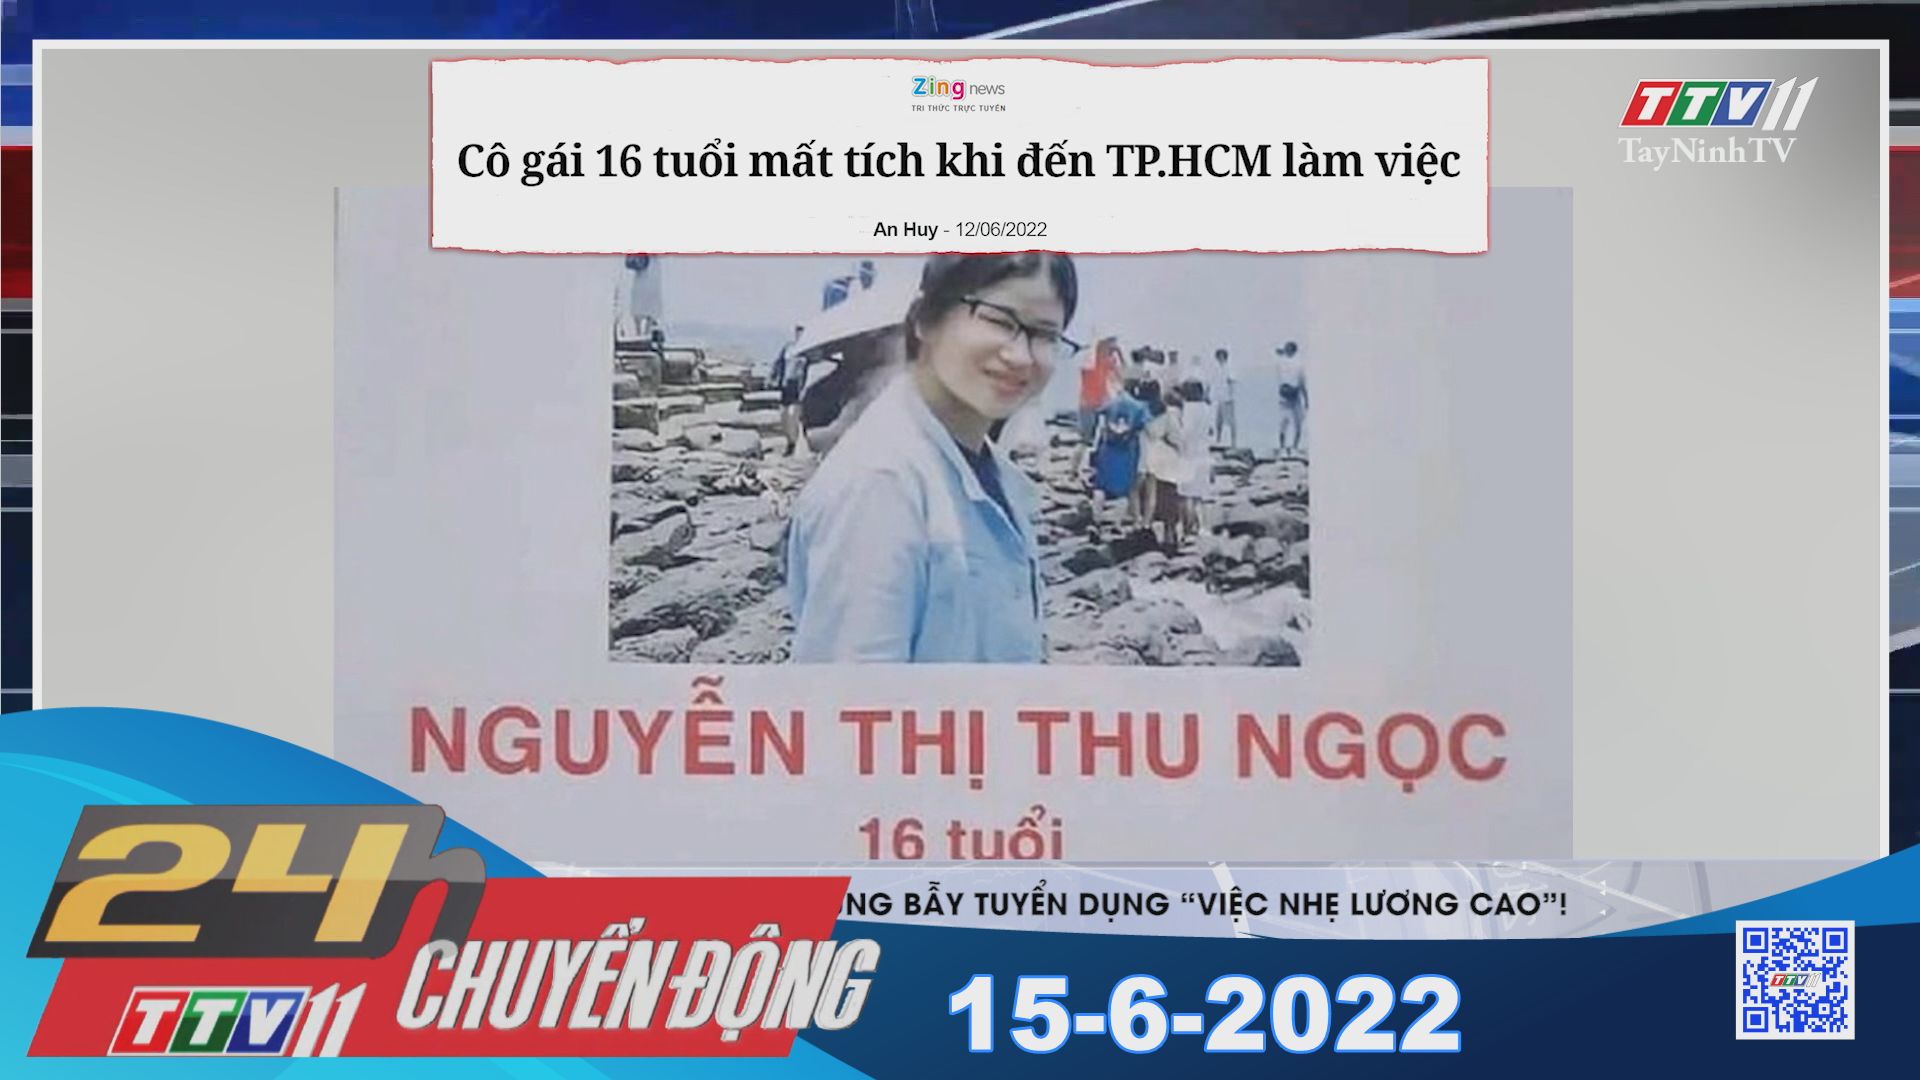 24h Chuyển động 15-6-2022 | Tin tức hôm nay | TayNinhTV